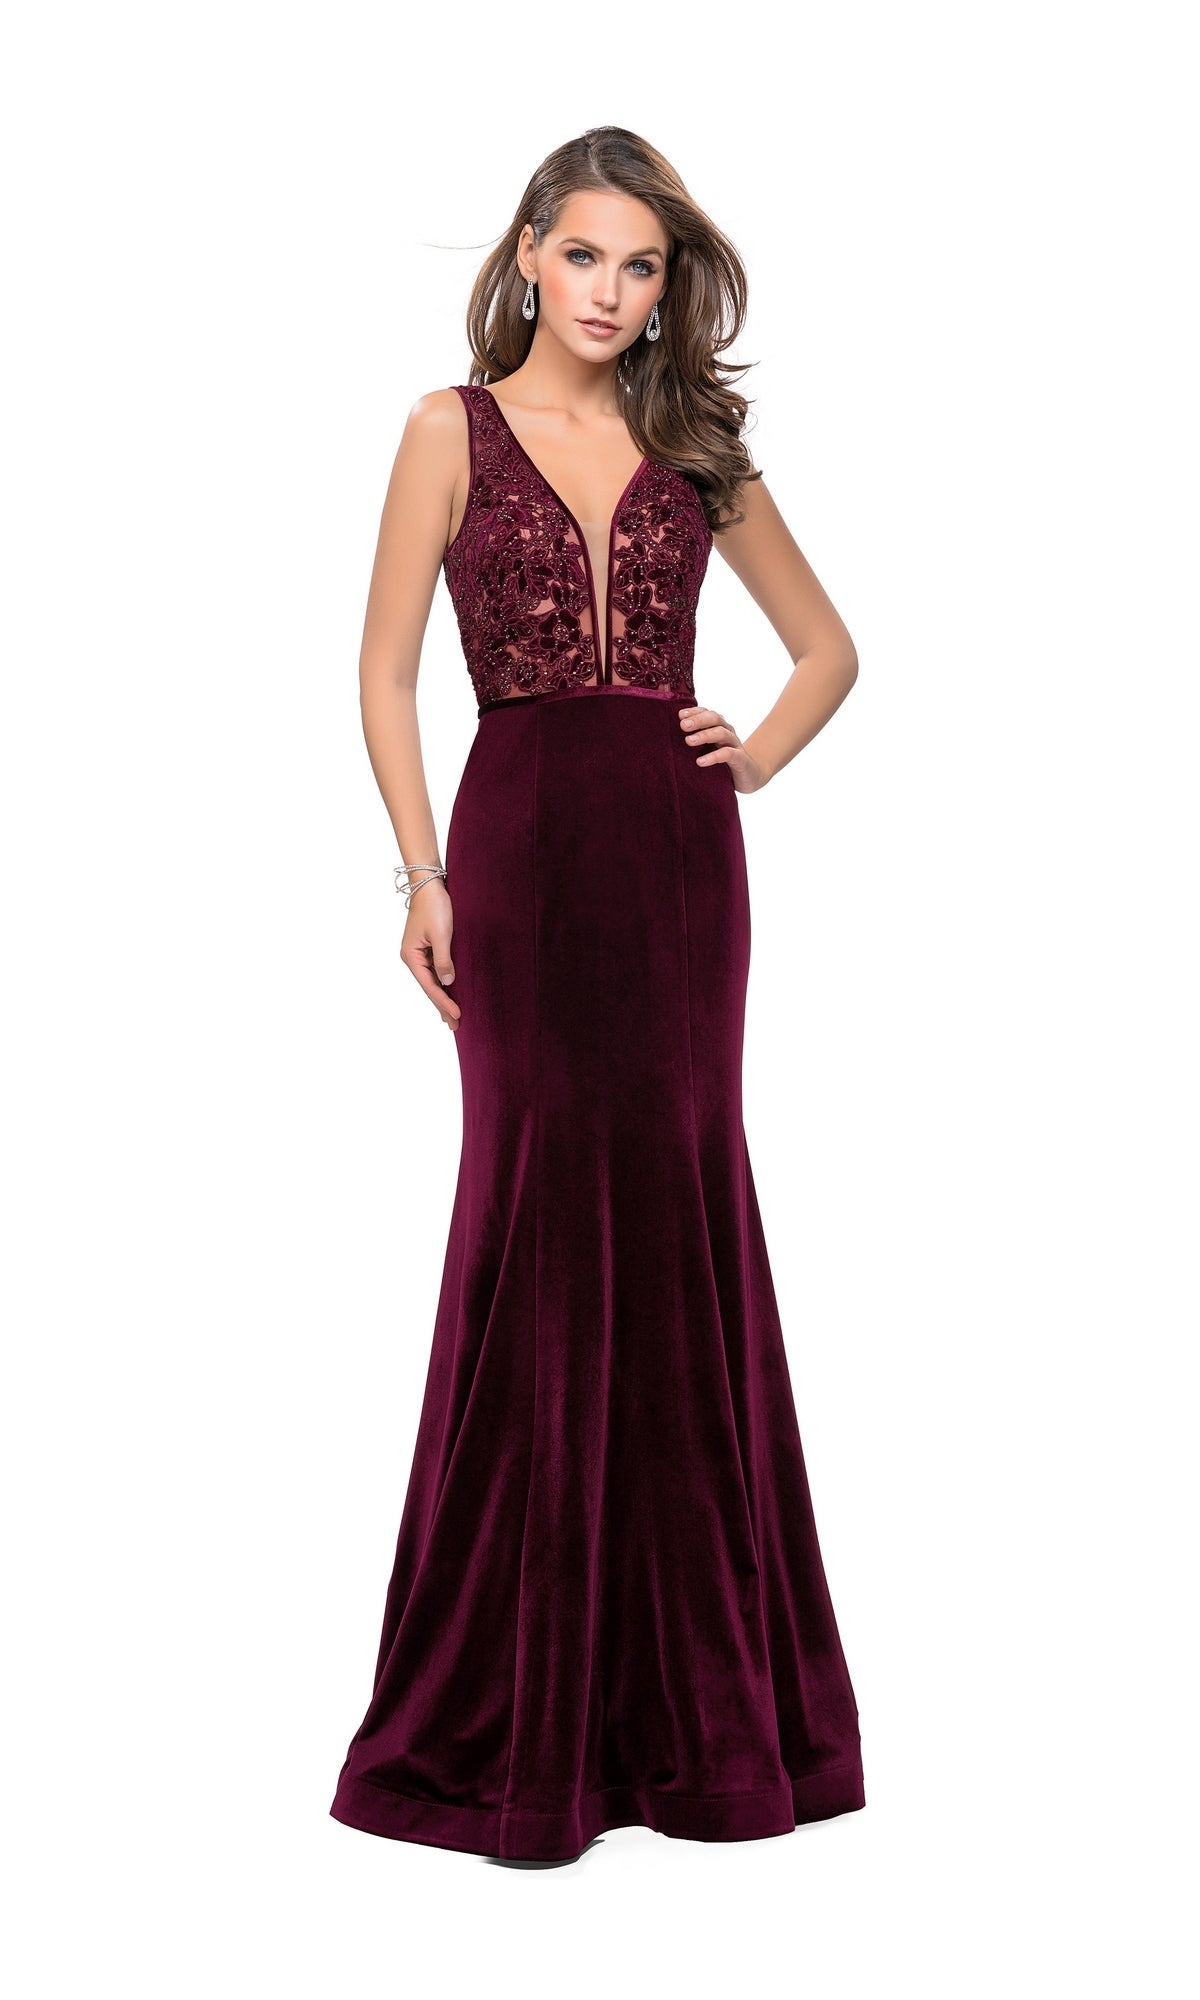 La Femme 25824 Wine Red Long Prom Dress